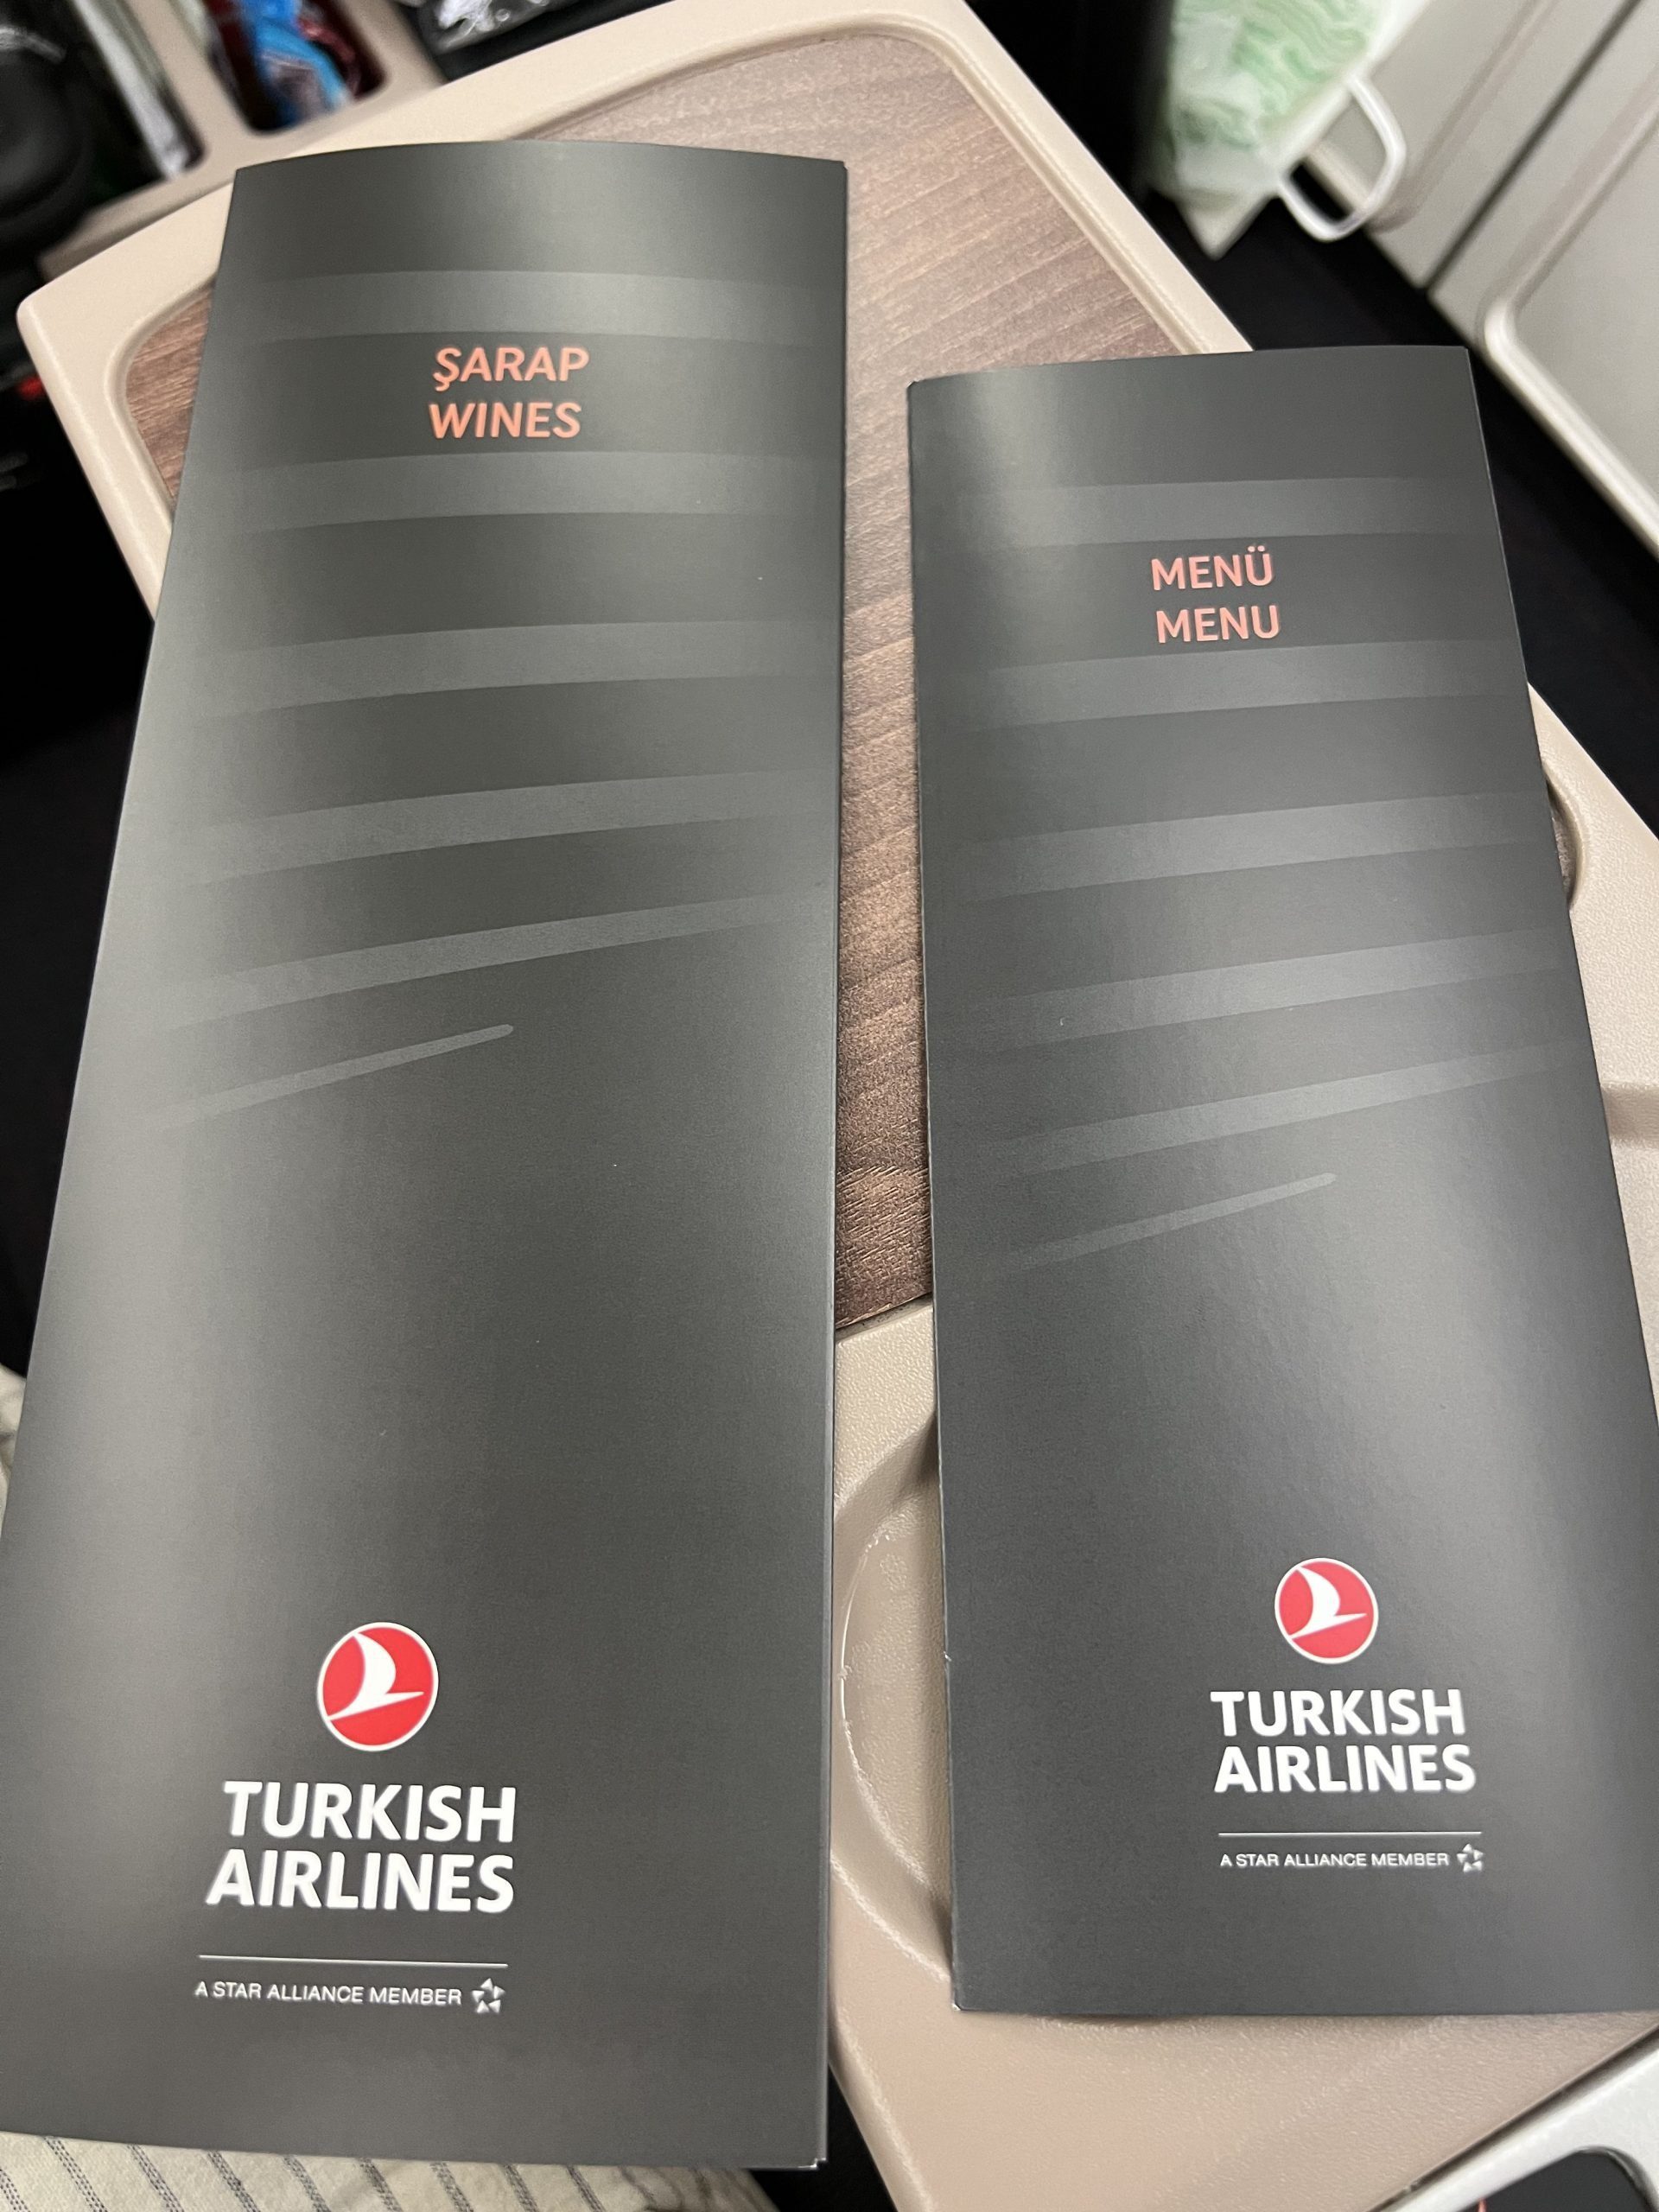 Turkish A330 Food and Wine Menus